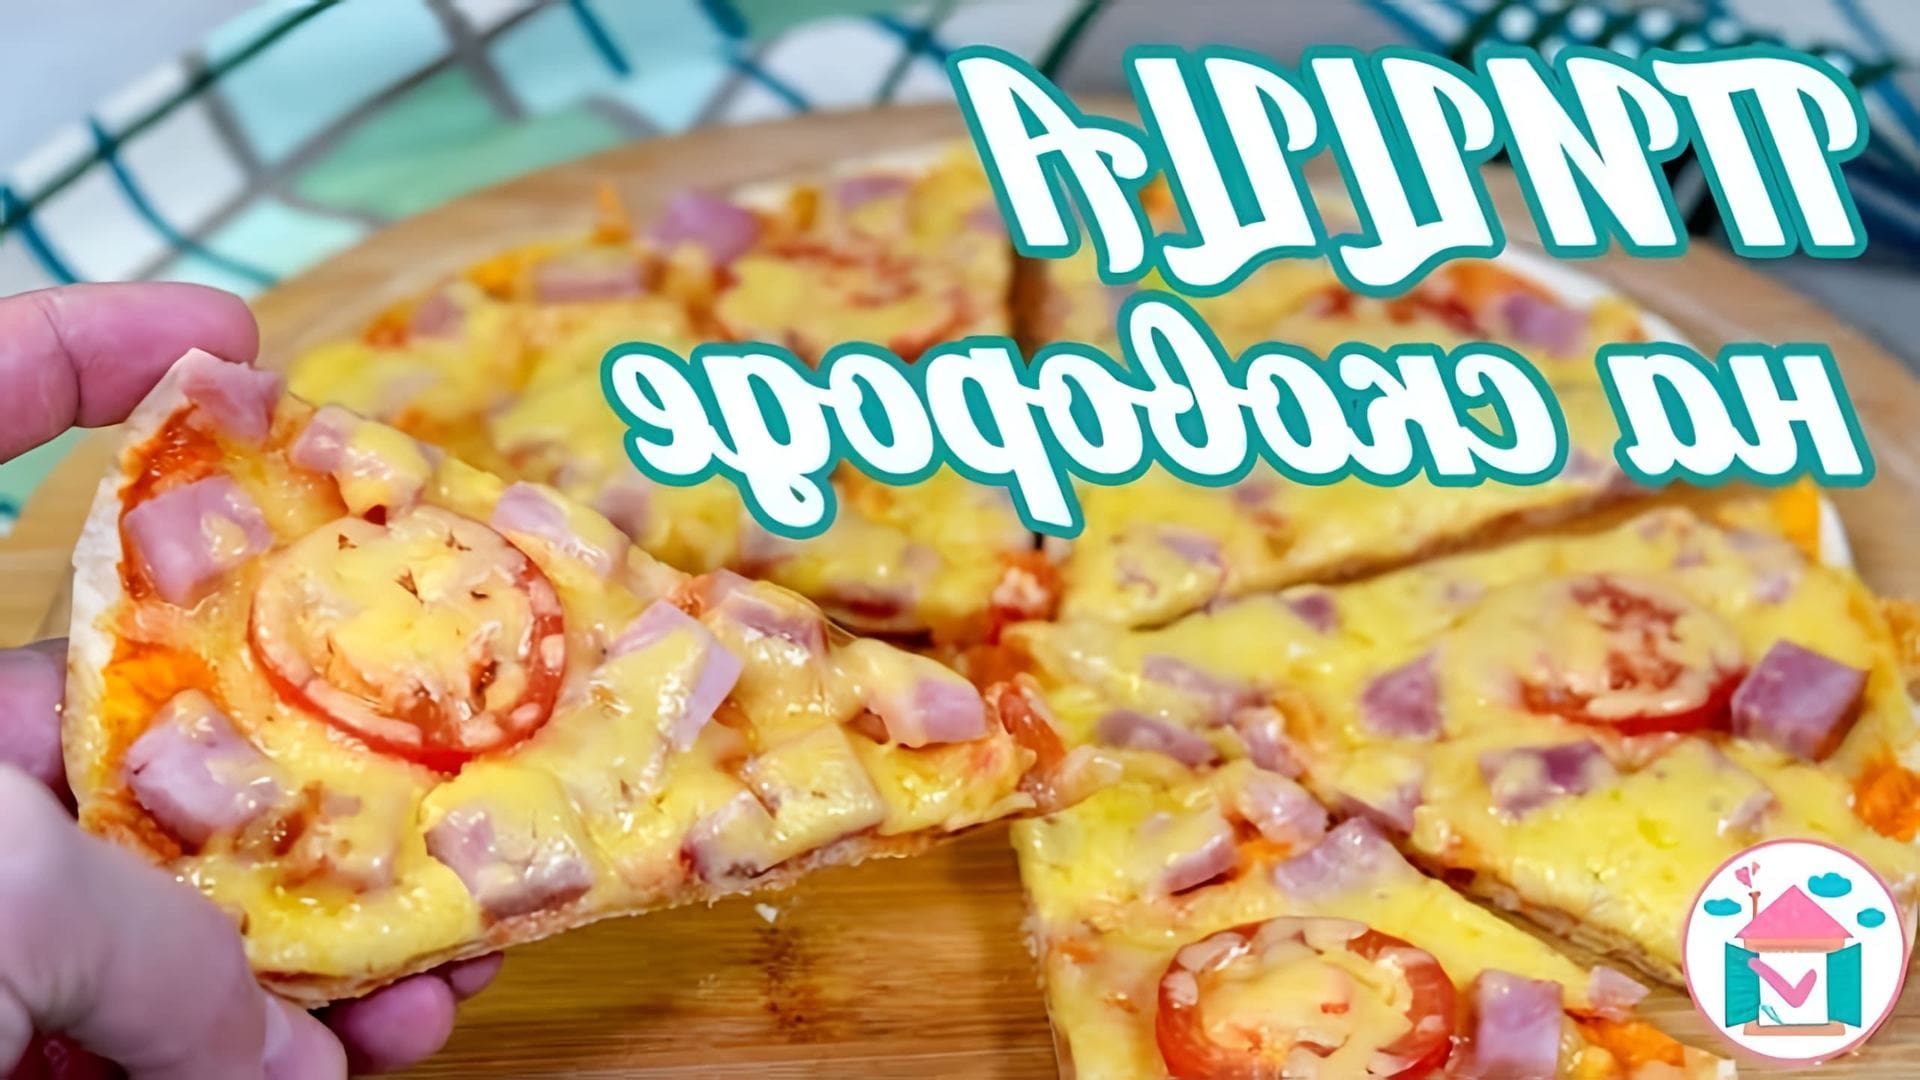 В этом видео демонстрируется рецепт быстрой пиццы на сковороде, который можно приготовить всего за 10 минут